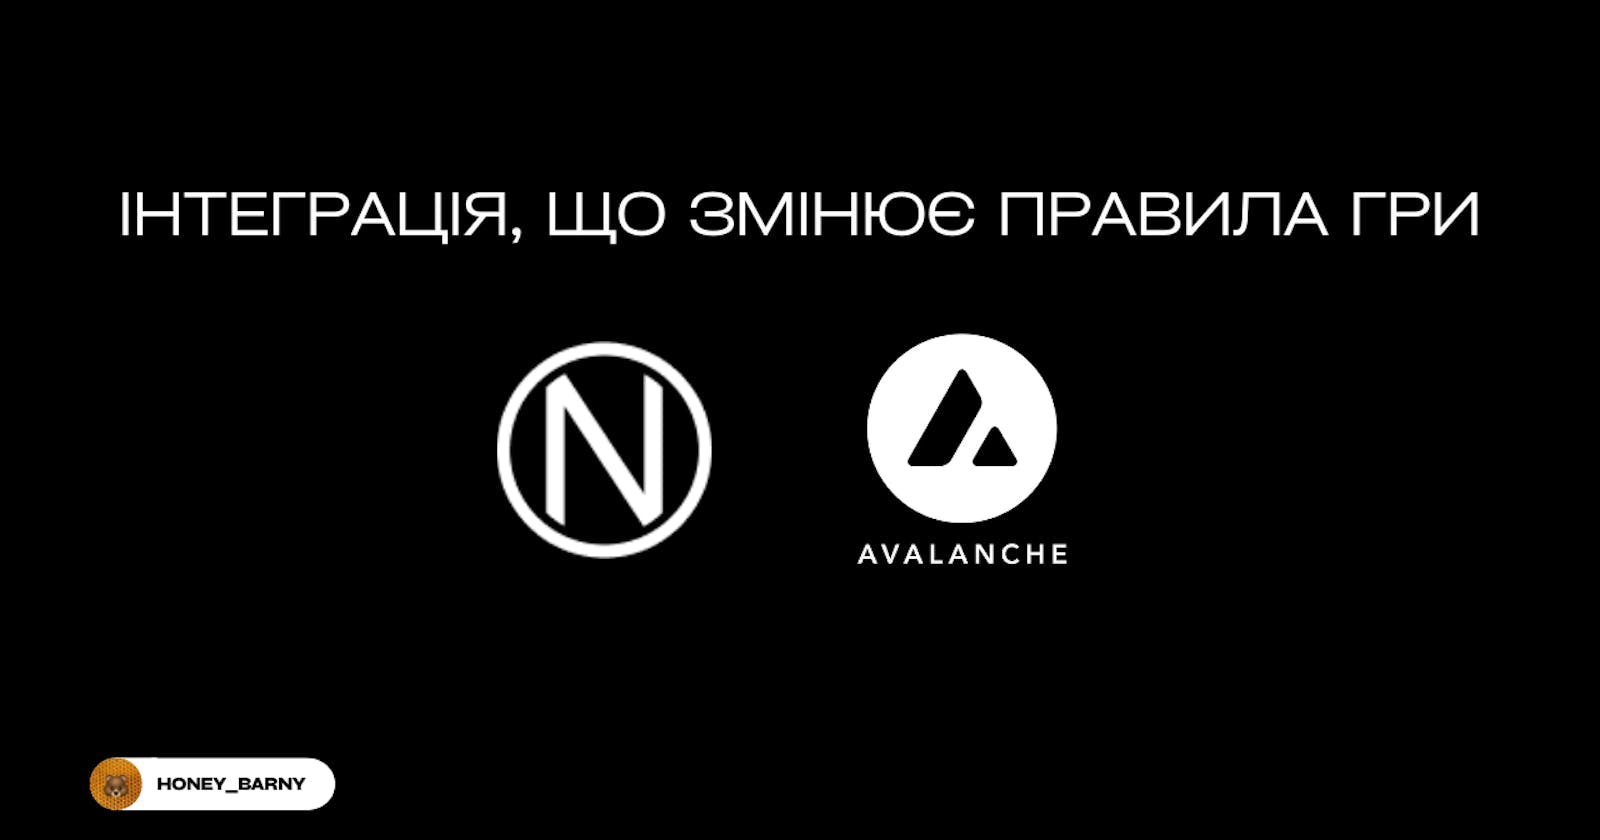 Nym та Avalanche створюють нову межу у сфері приватності: Інтеграція, що змінює правила гри